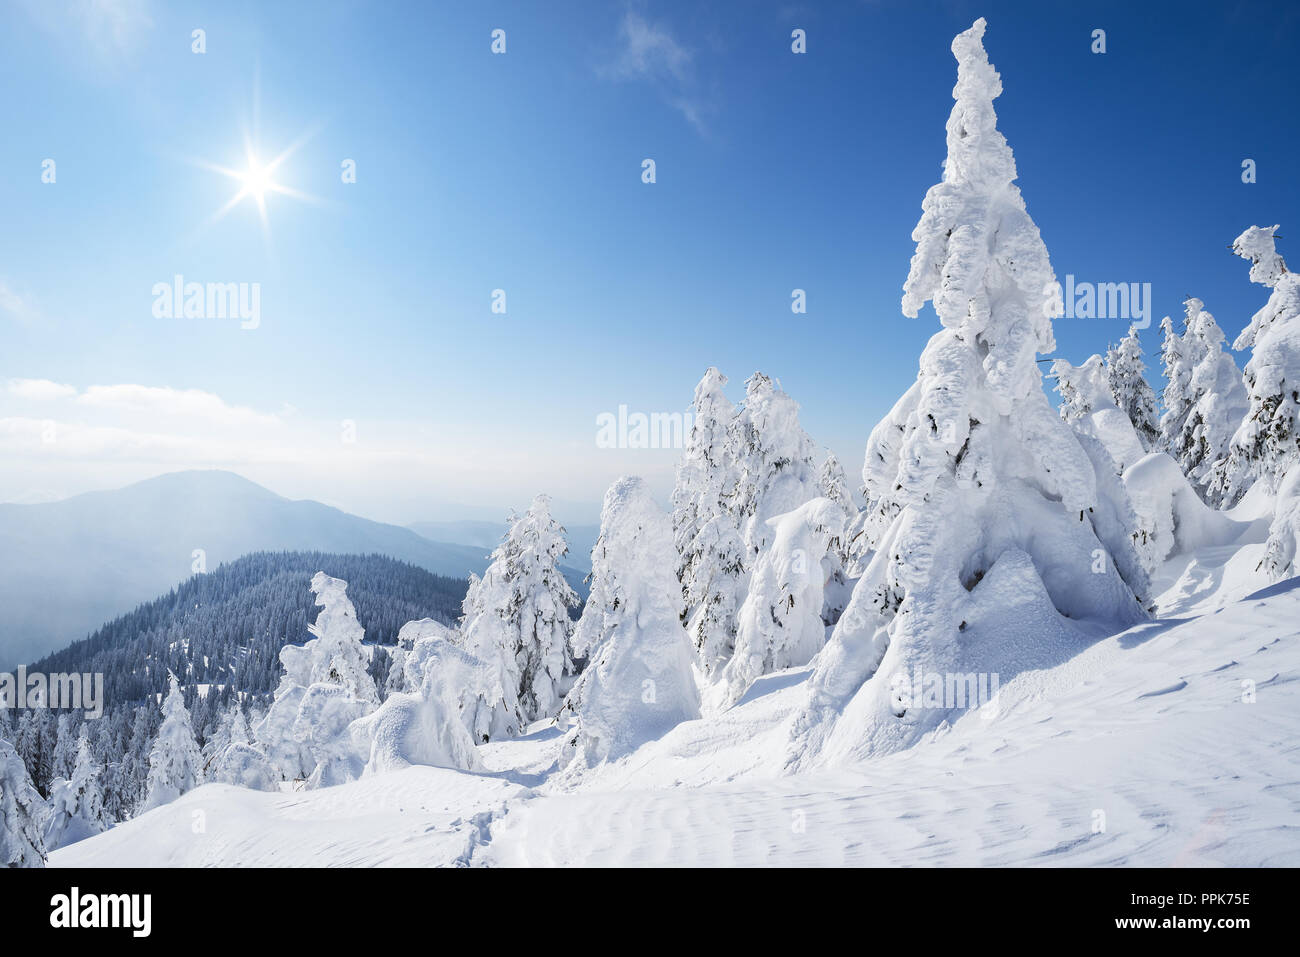 La forêt enneigée en hiver. Journée ensoleillée avec soleil et ciel bleu. Vue de Noël avec sapins après chute de neige. Paysage de montagne Banque D'Images